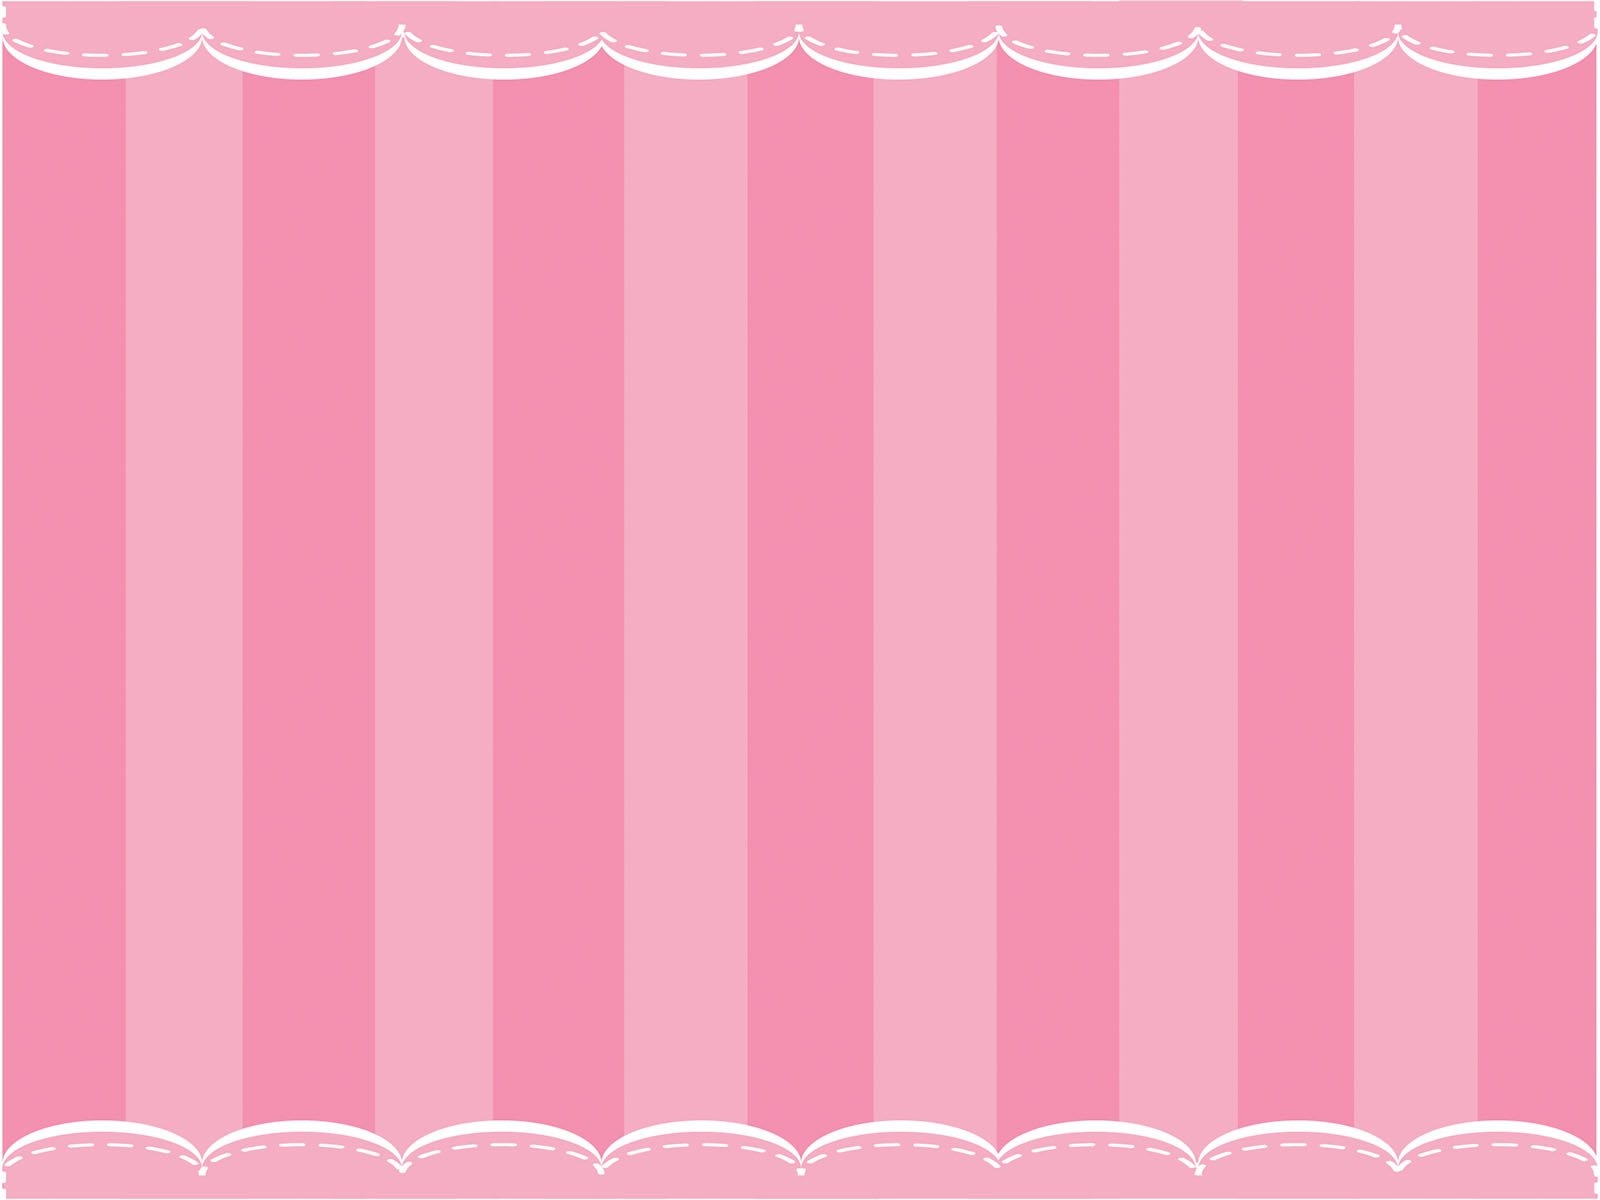 Powerpoint Background Cute Pink | cortezcolorado.net